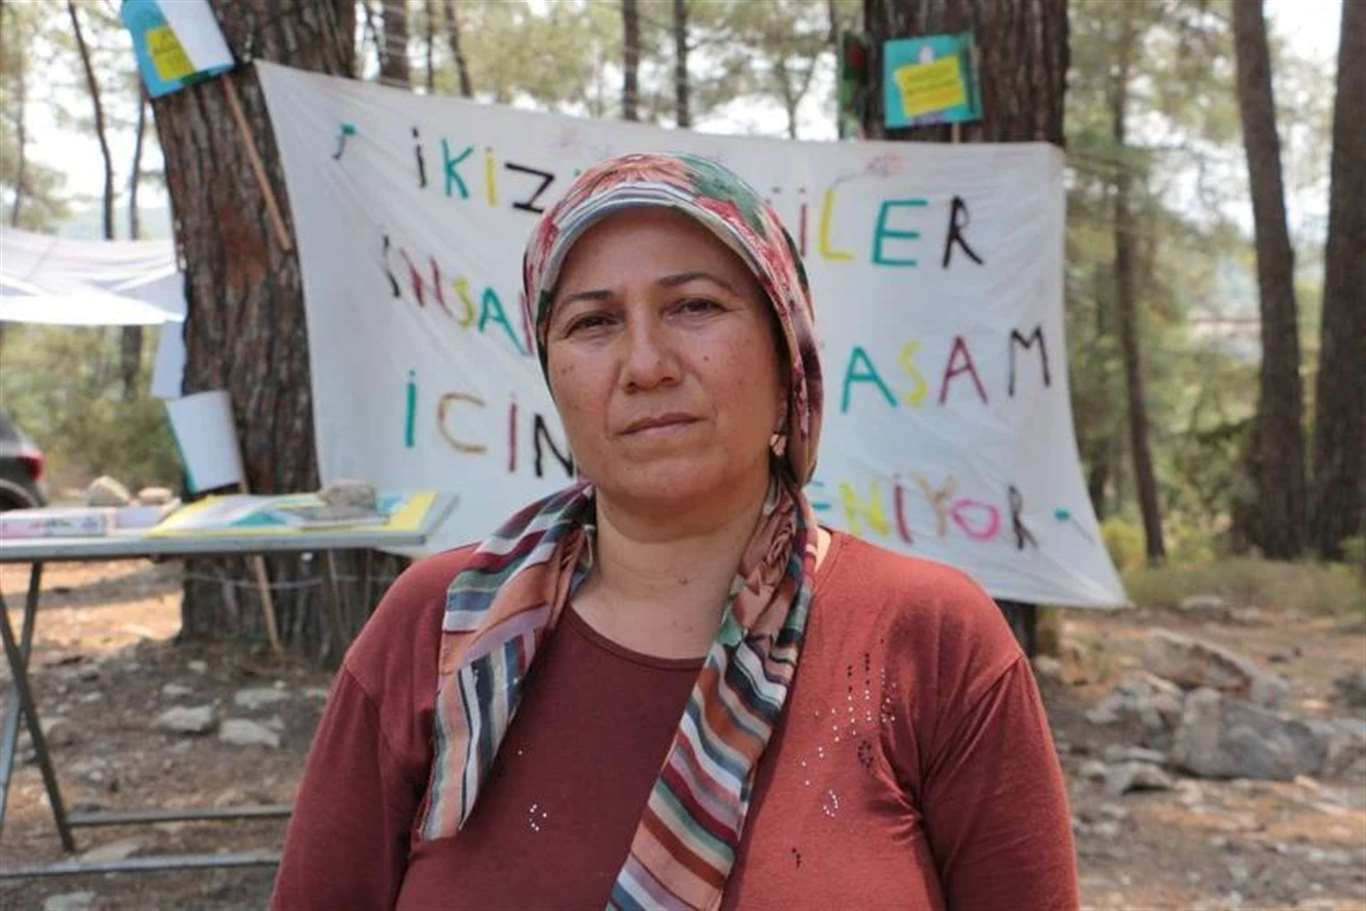 İkizköy muhtarı 'ağaçlara pankart astığı' için yargılanıyor haberi